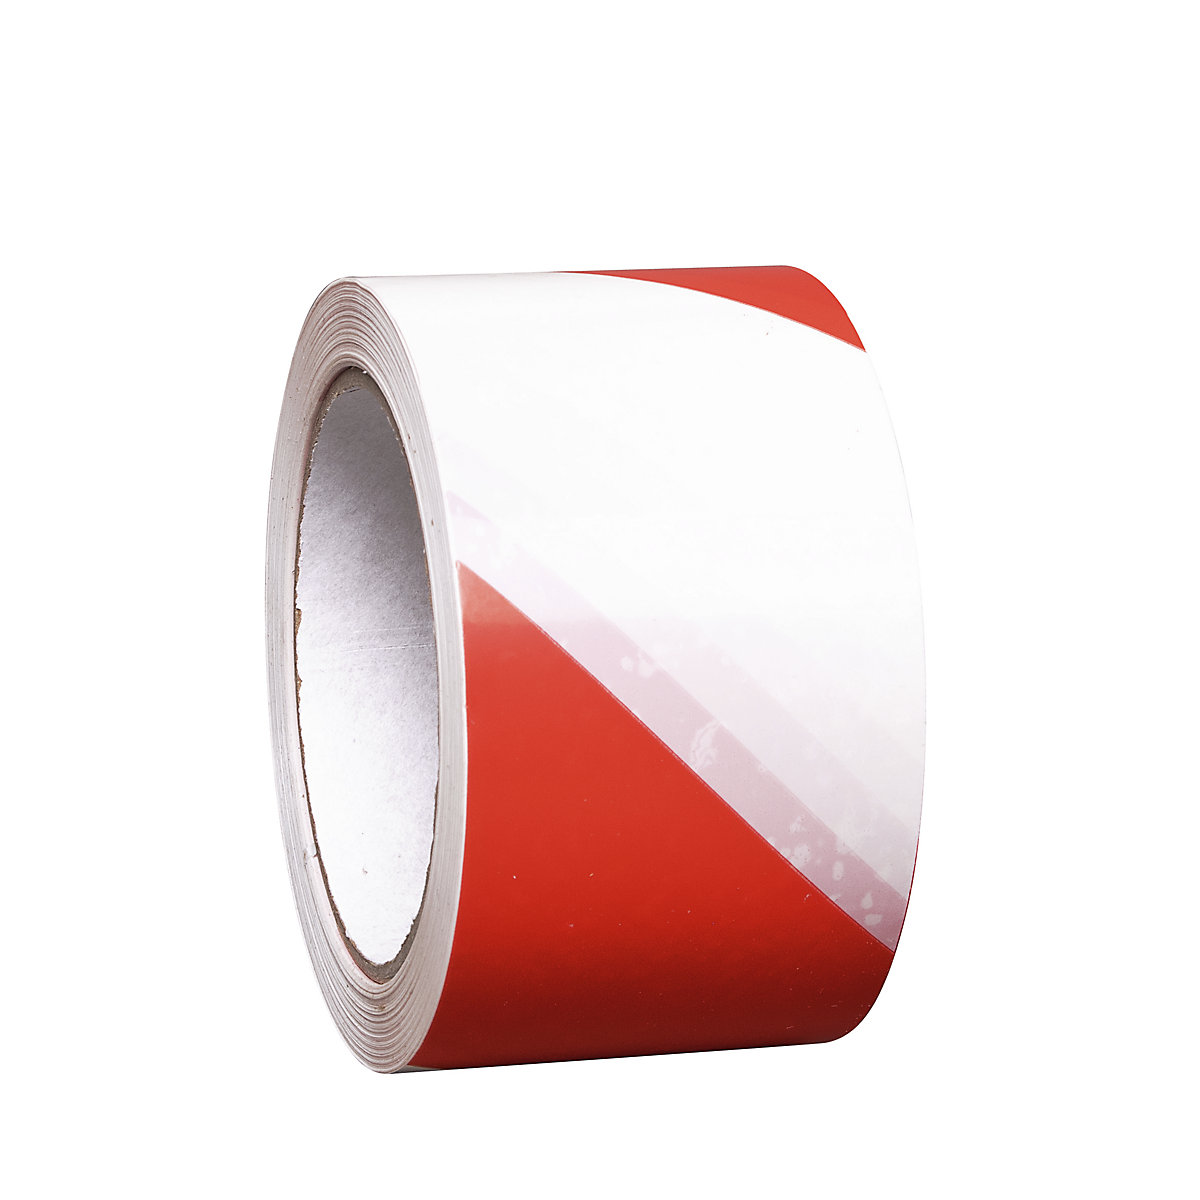 Traka za označavanje podova, samoljepljiva izvedba, 1 rola, u crveno-bijeloj boji, pak. 2 kom.-1